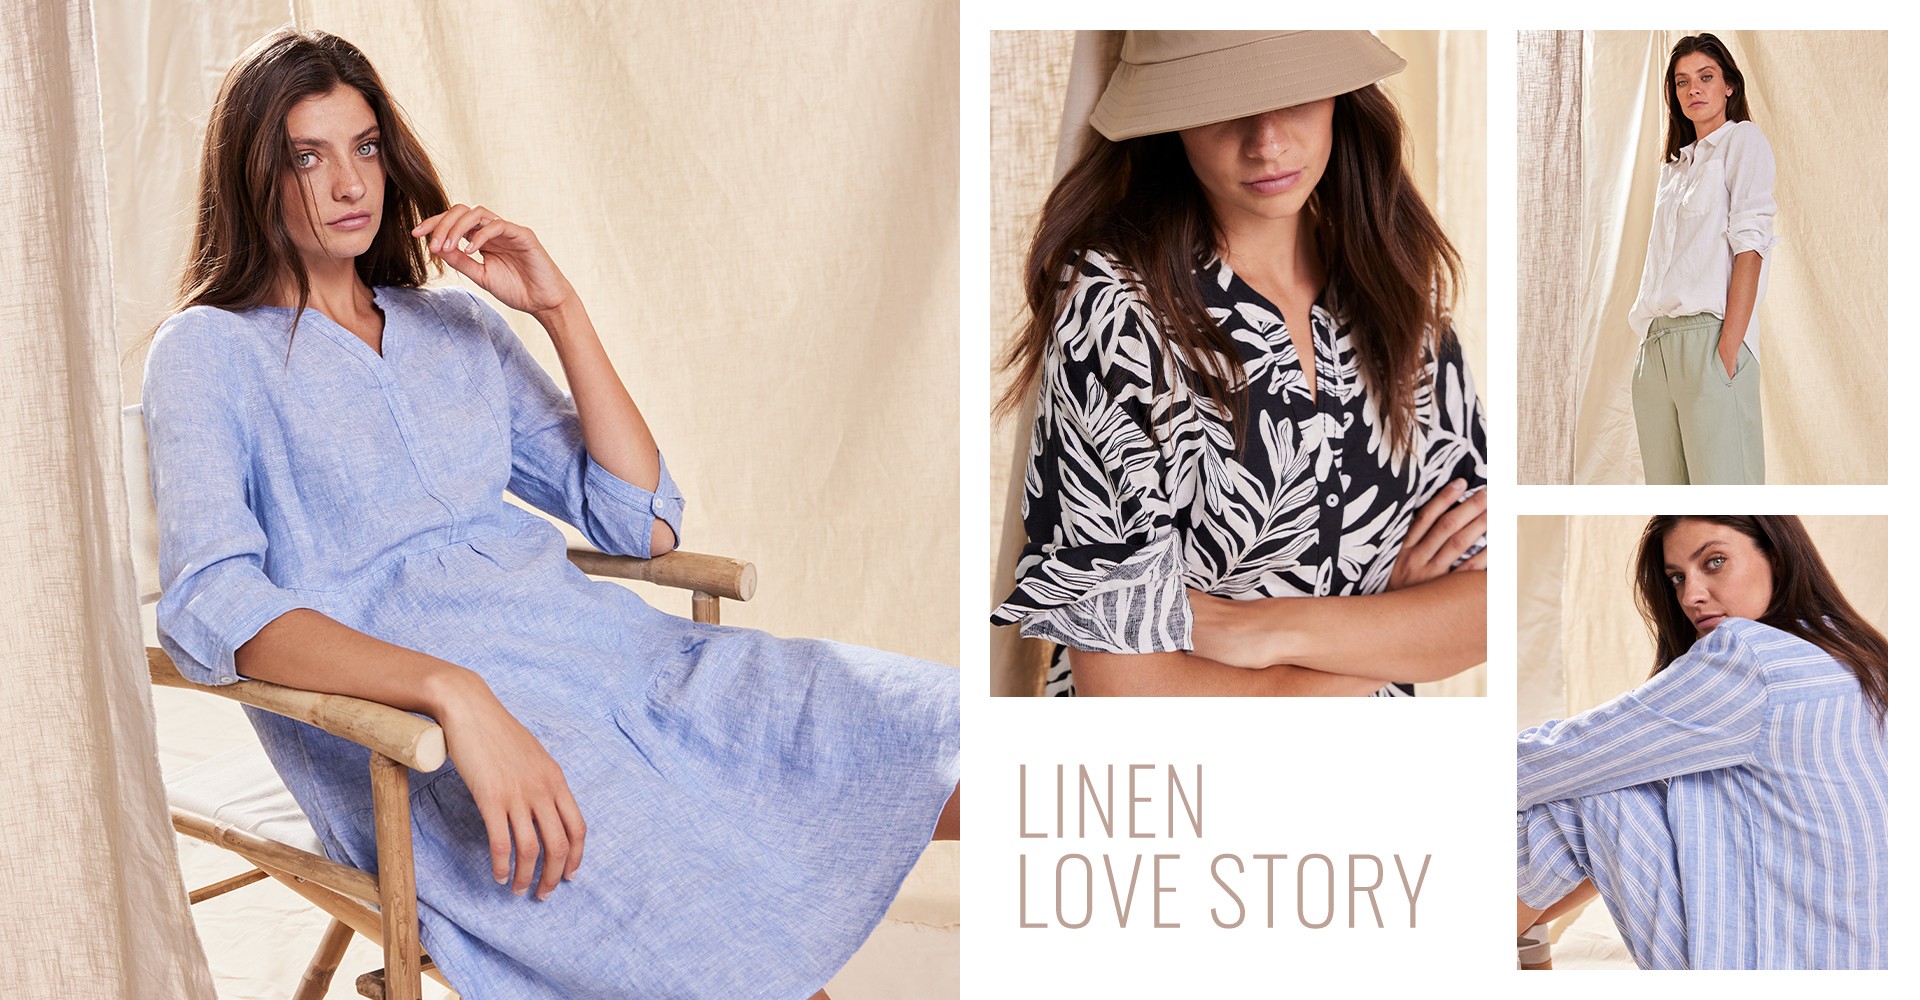 Linen love story